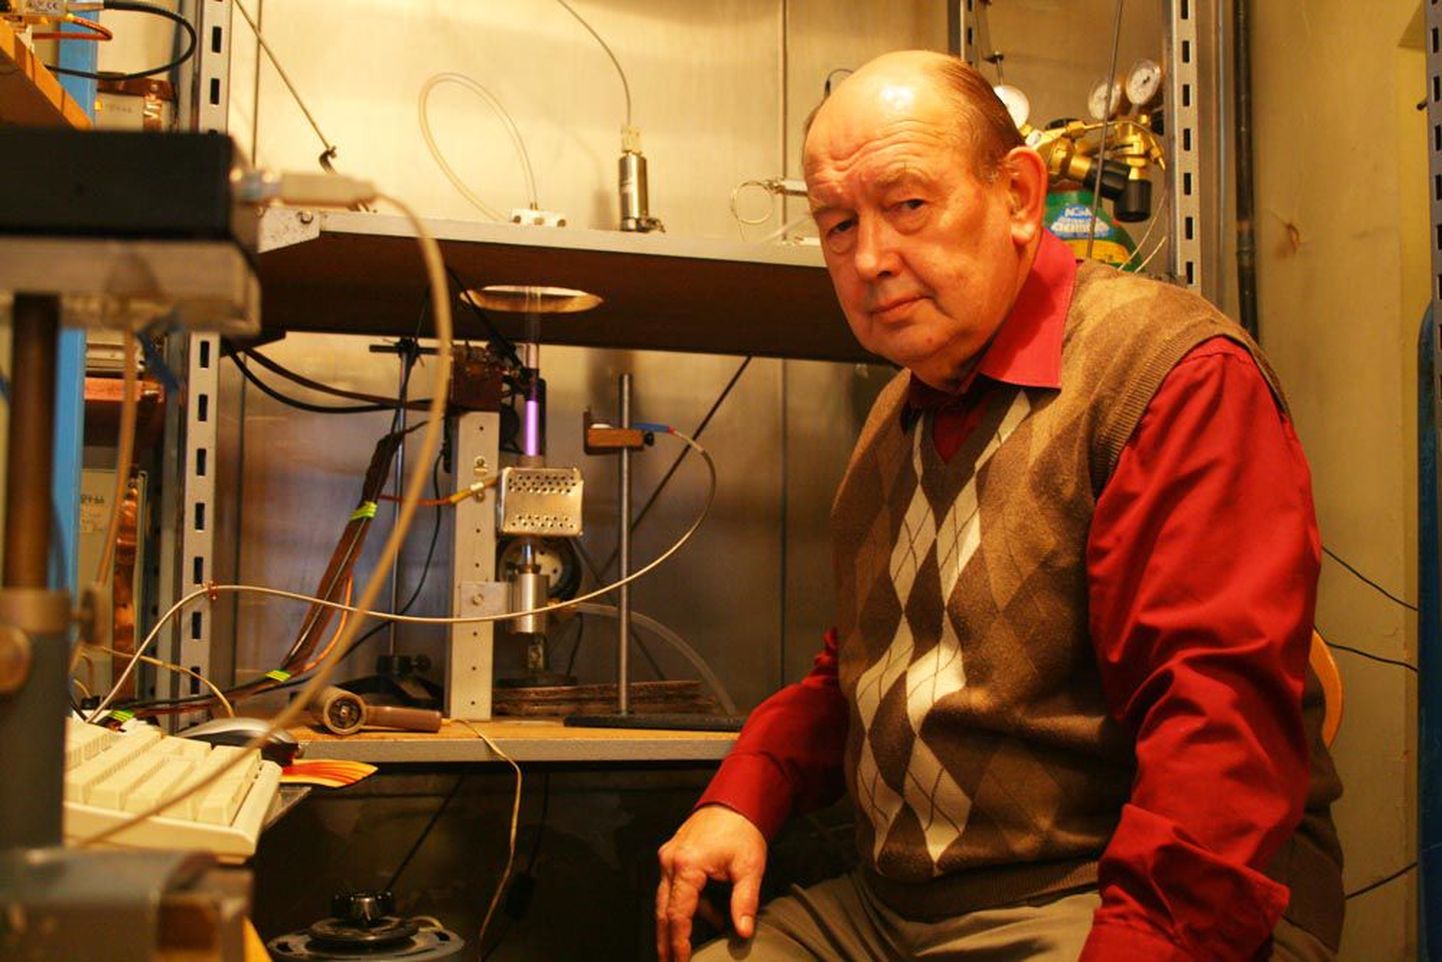 Helenduva gaasi spektri mõõtmiseks juhib Tartu Ülikooli füüsika instituudi gaaslahenduslabori optika ja spektroskoopia dotsent Matti Laan valguse optilise kaabli abil spektomeetrisse. Niisuguse kaabli loomiseni viiva avastuse tegijatele määrati tänavune Nobeli füüsikapreemia.